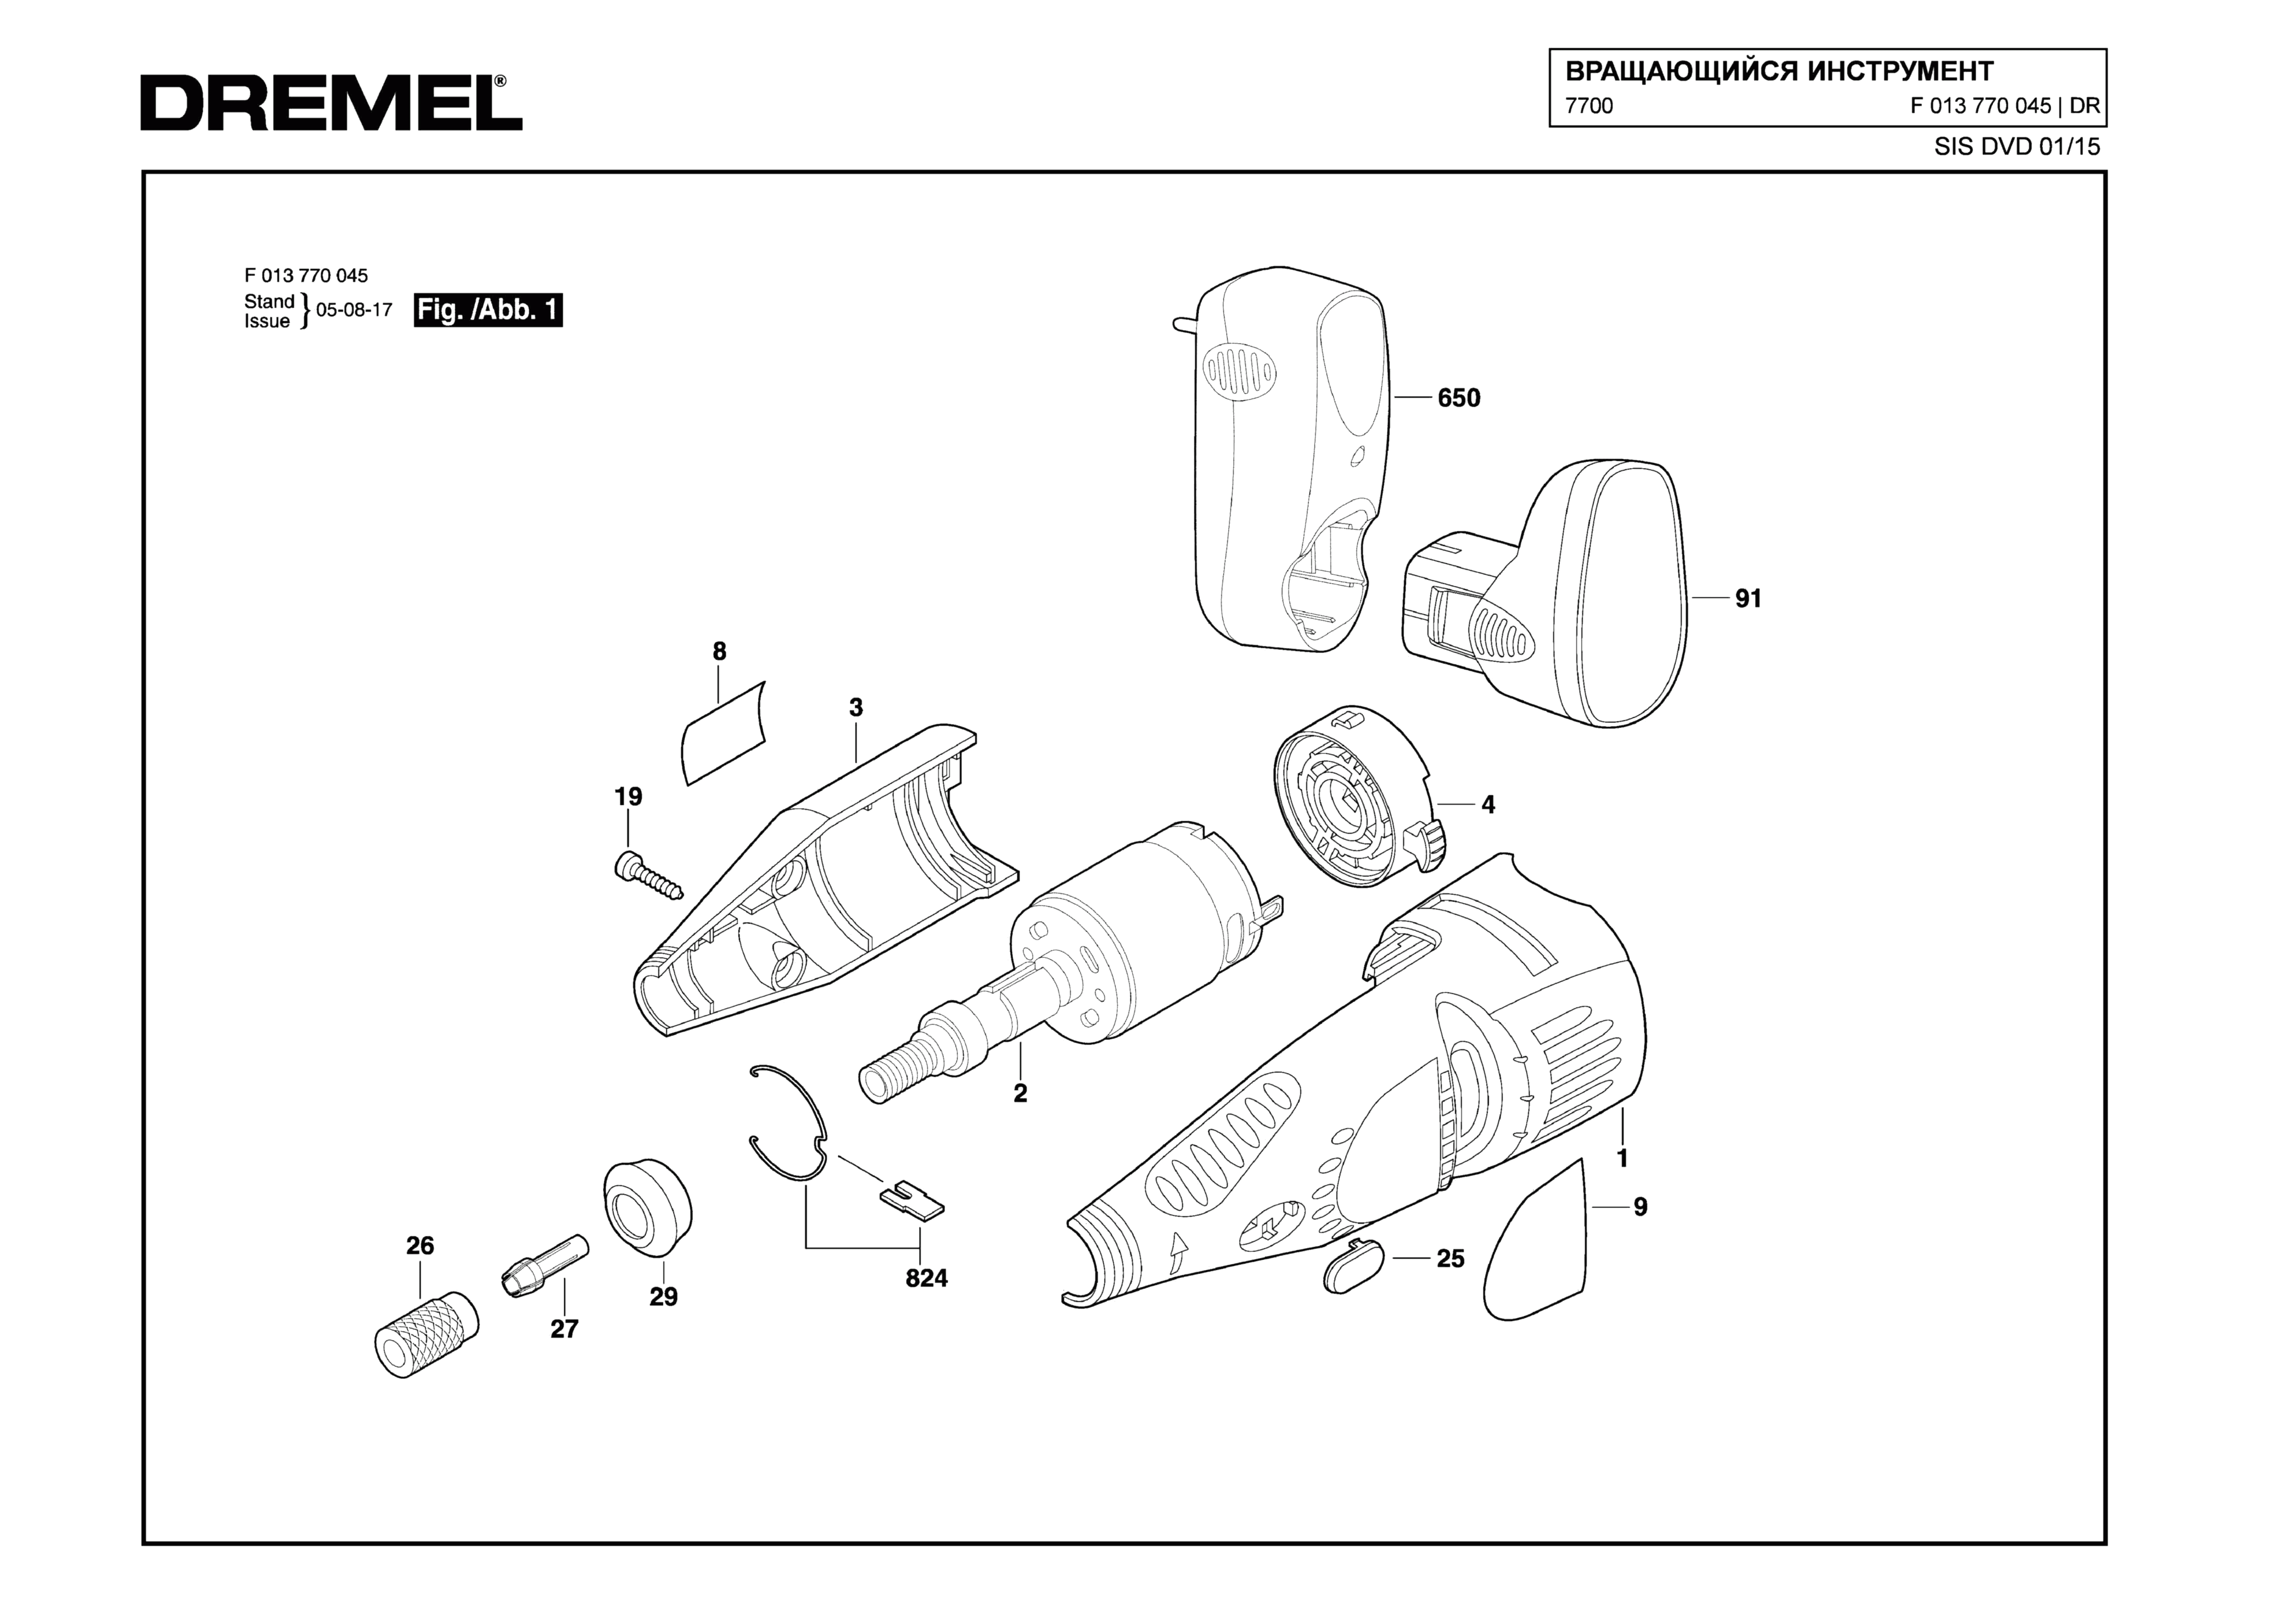 Шлифовальная машина Dremel 7700 (ТИП F013770045)